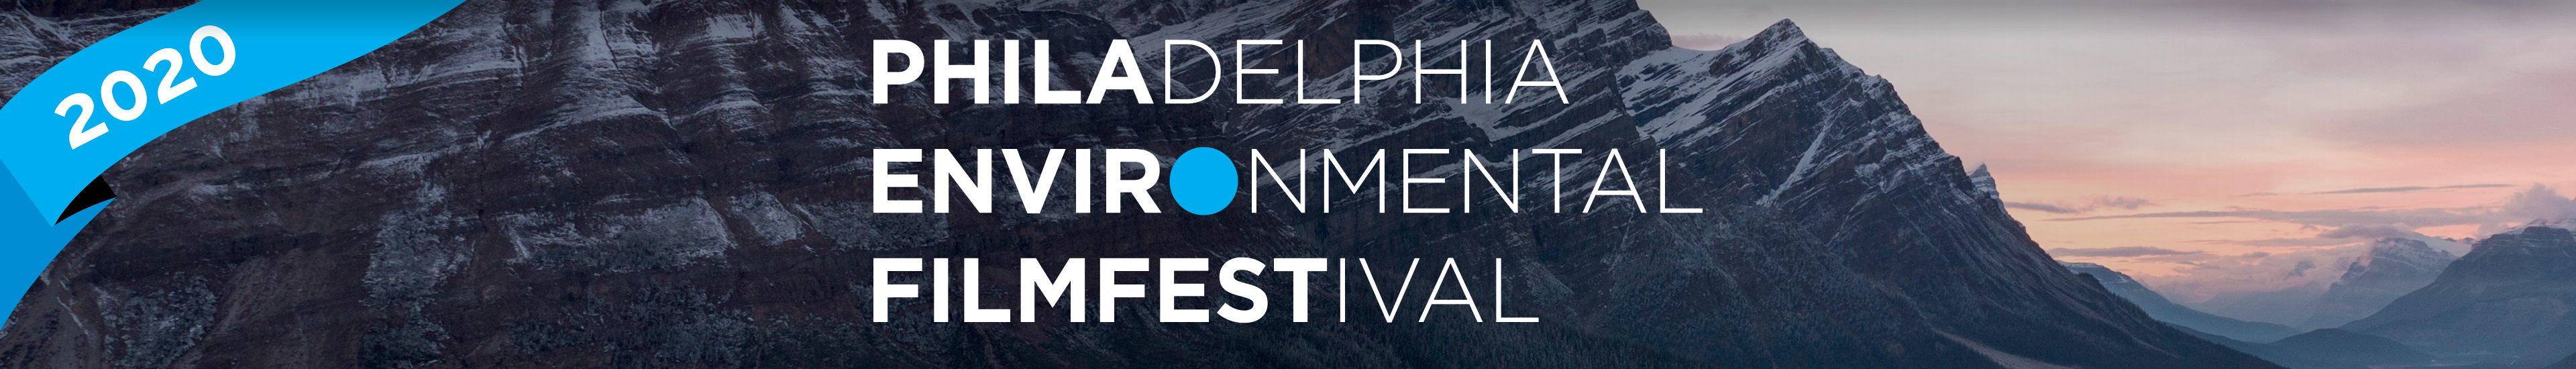 Philadelphia Environmental Film Festival 2020